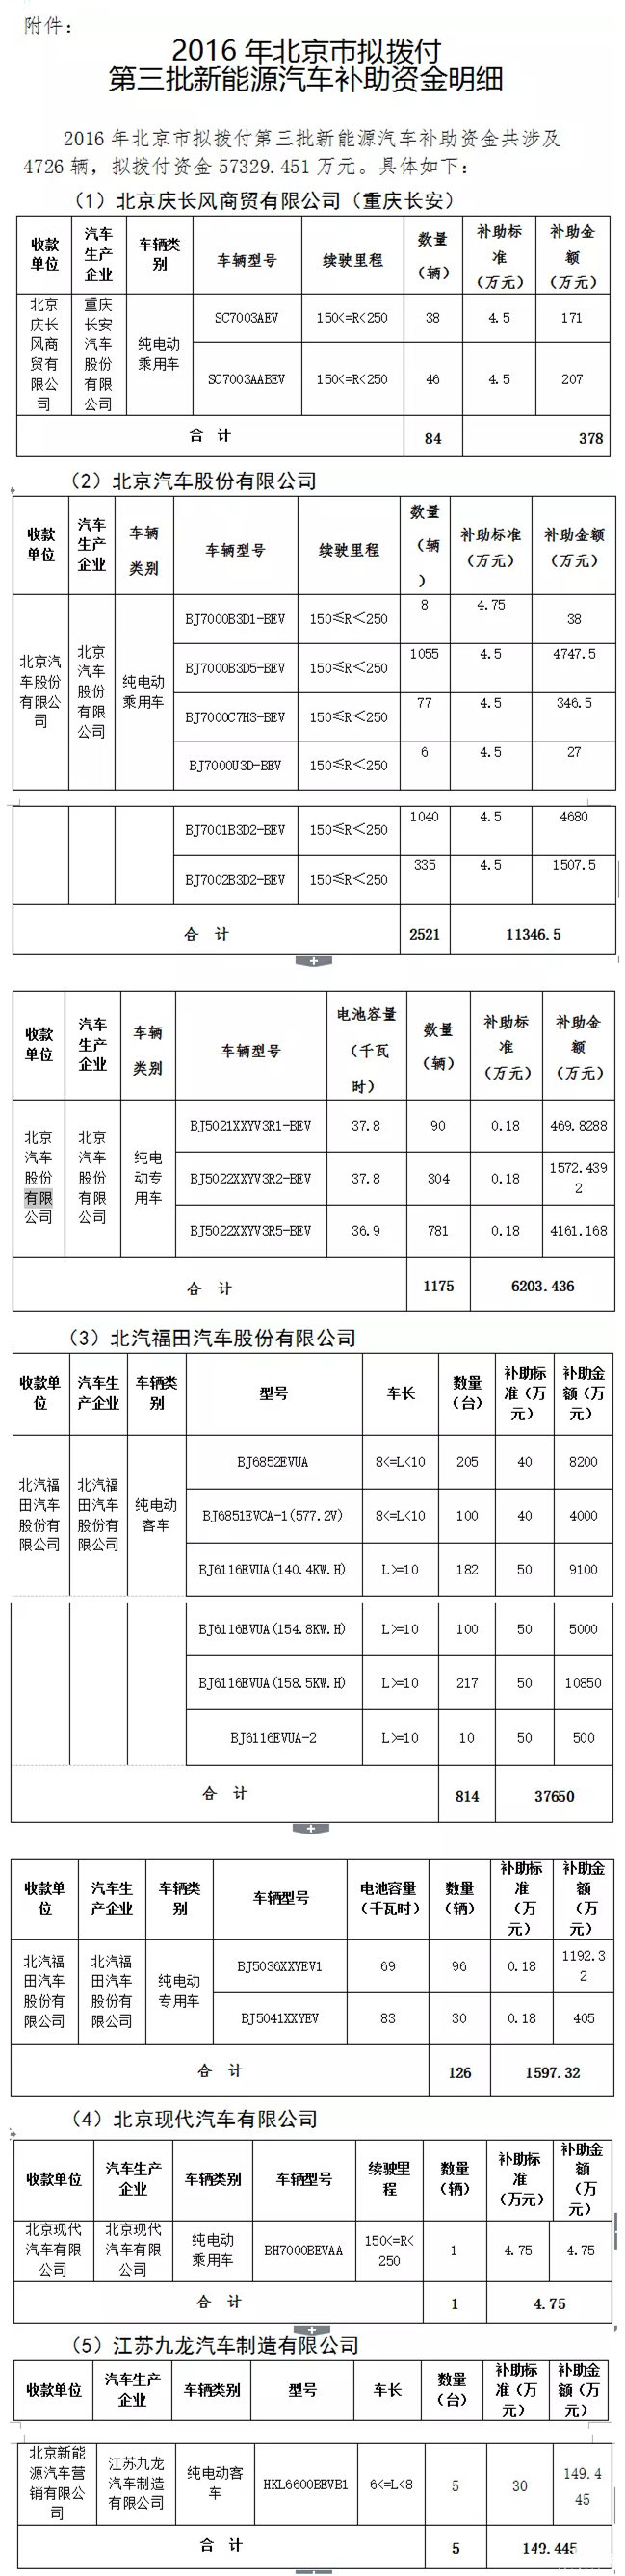 北京市第三批新能源汽车补贴名单发布 5家企业分5.7亿元补助资金